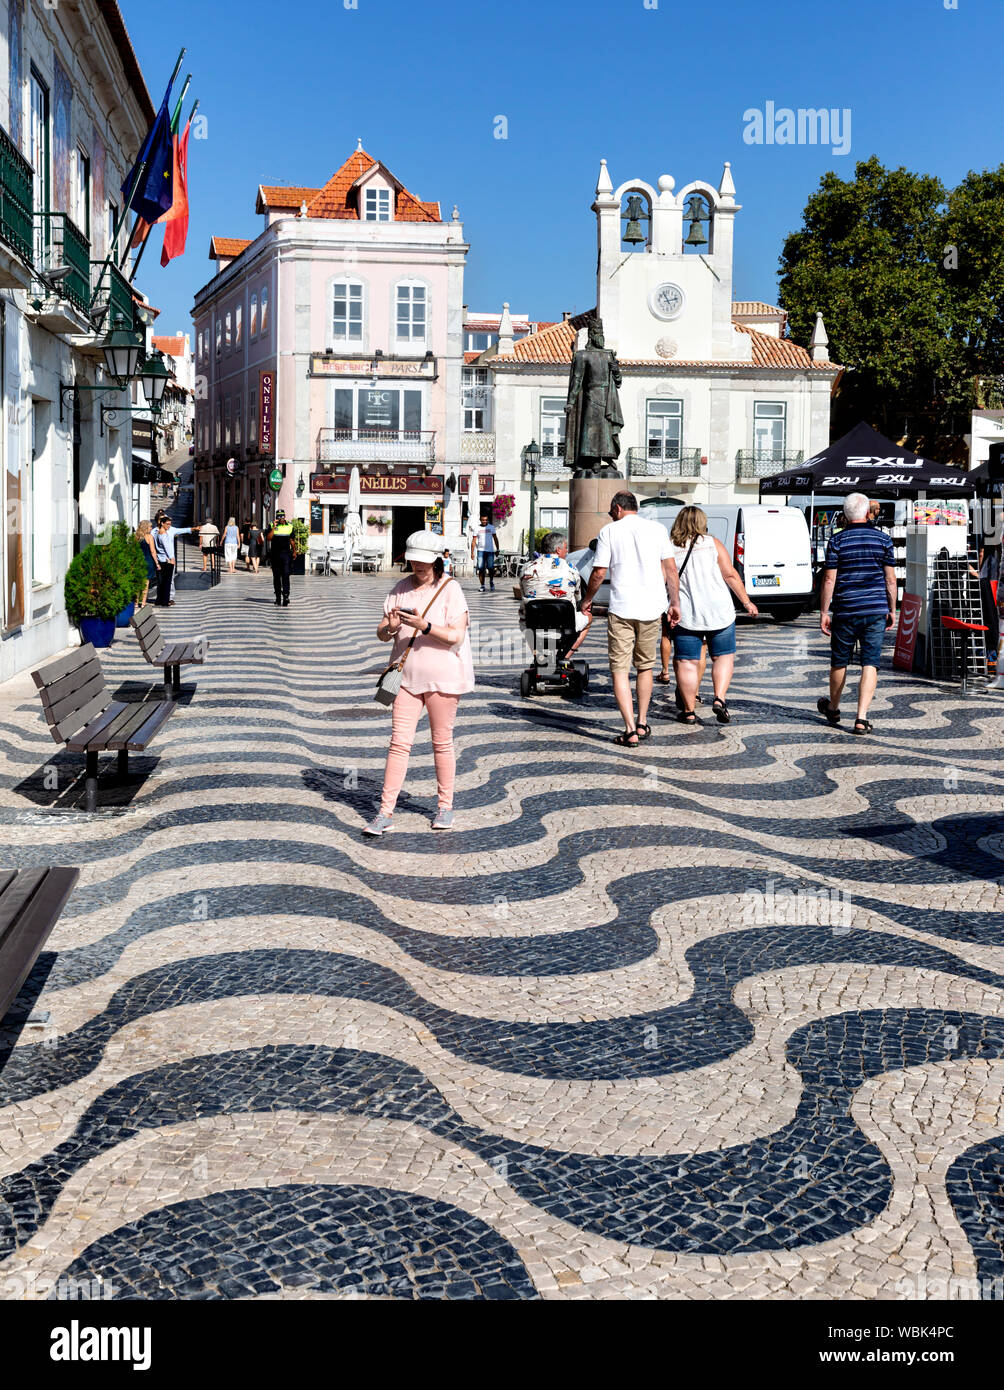 The seaside town of Cascais near Lisbon on the Atlantic coast, Portugal. Stock Photo